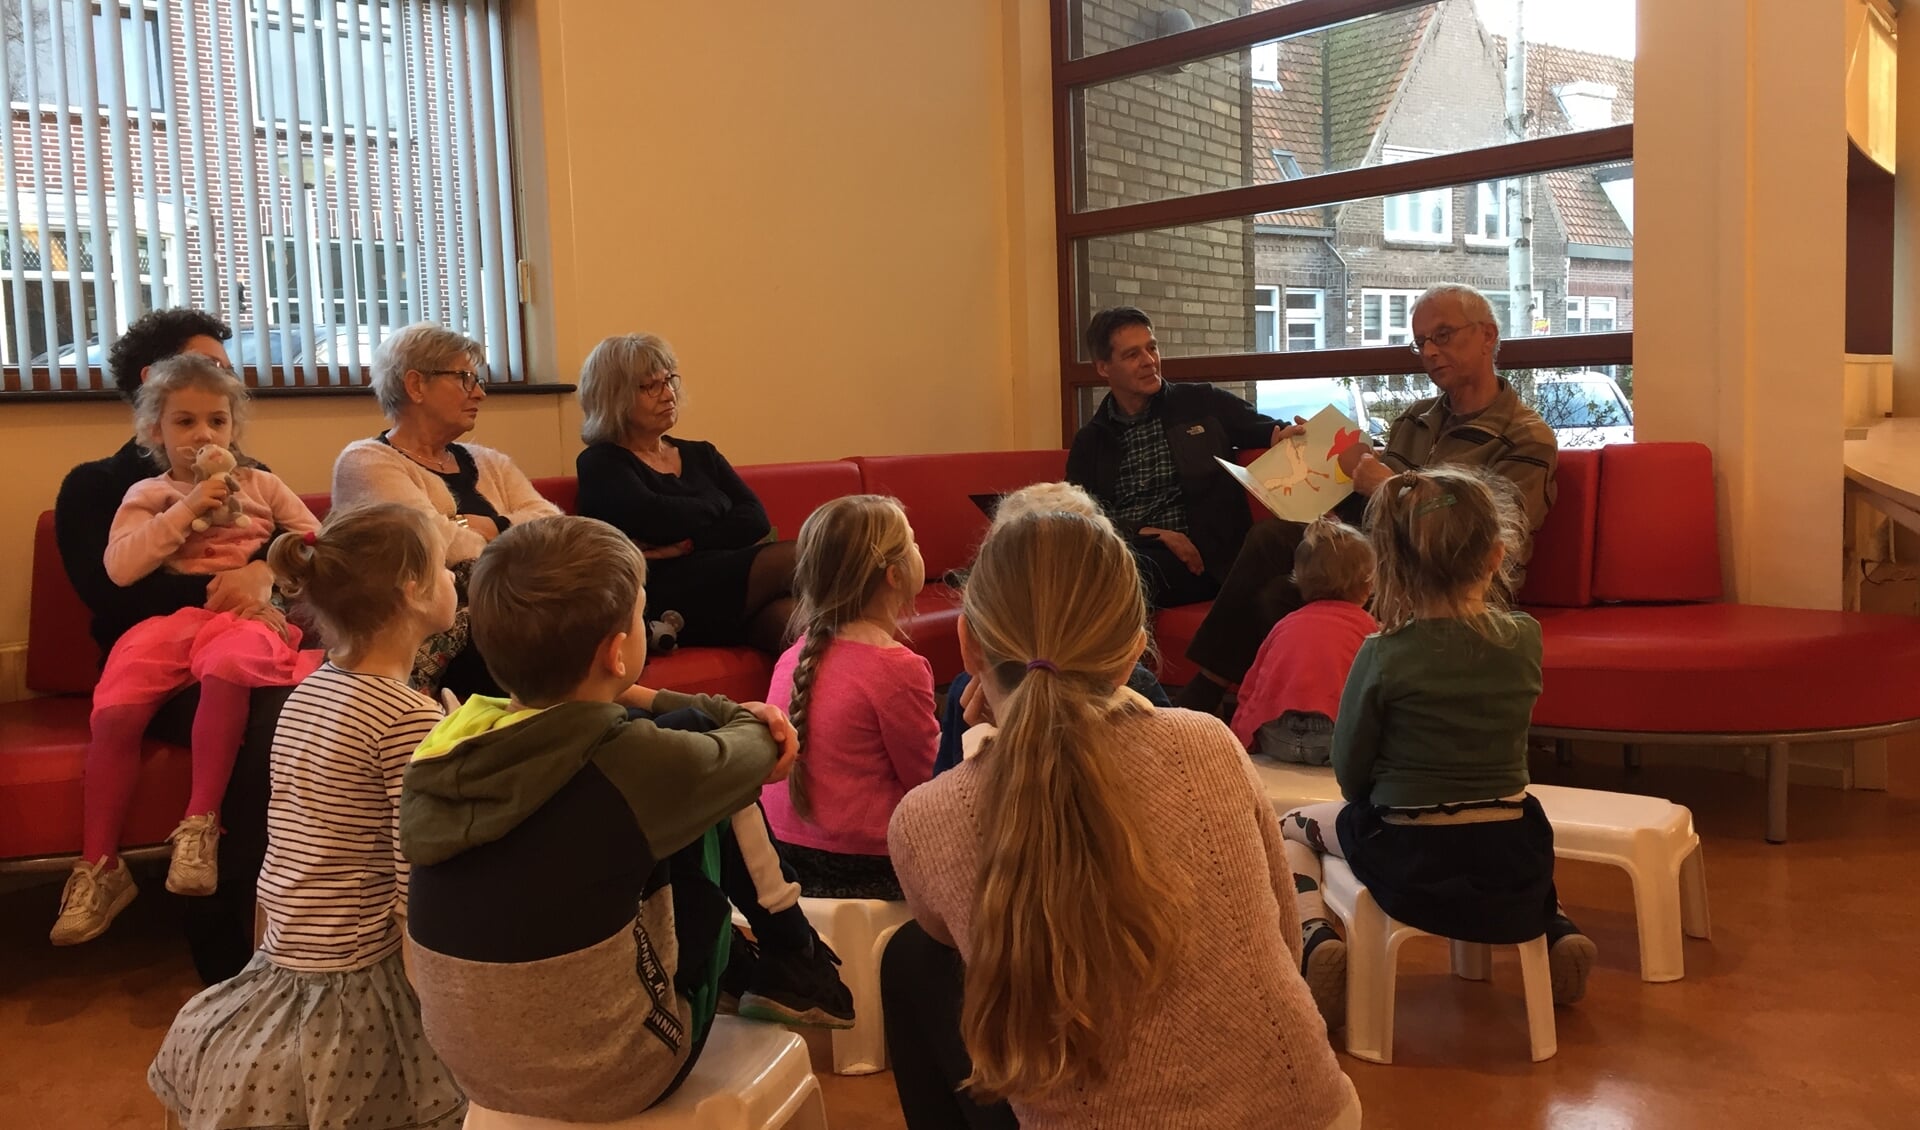 Ed Hoogkamer (met boek) leest voor, terwijl naast hem Paul Zwetsloot, samen met de kinderen, toeluistert. 